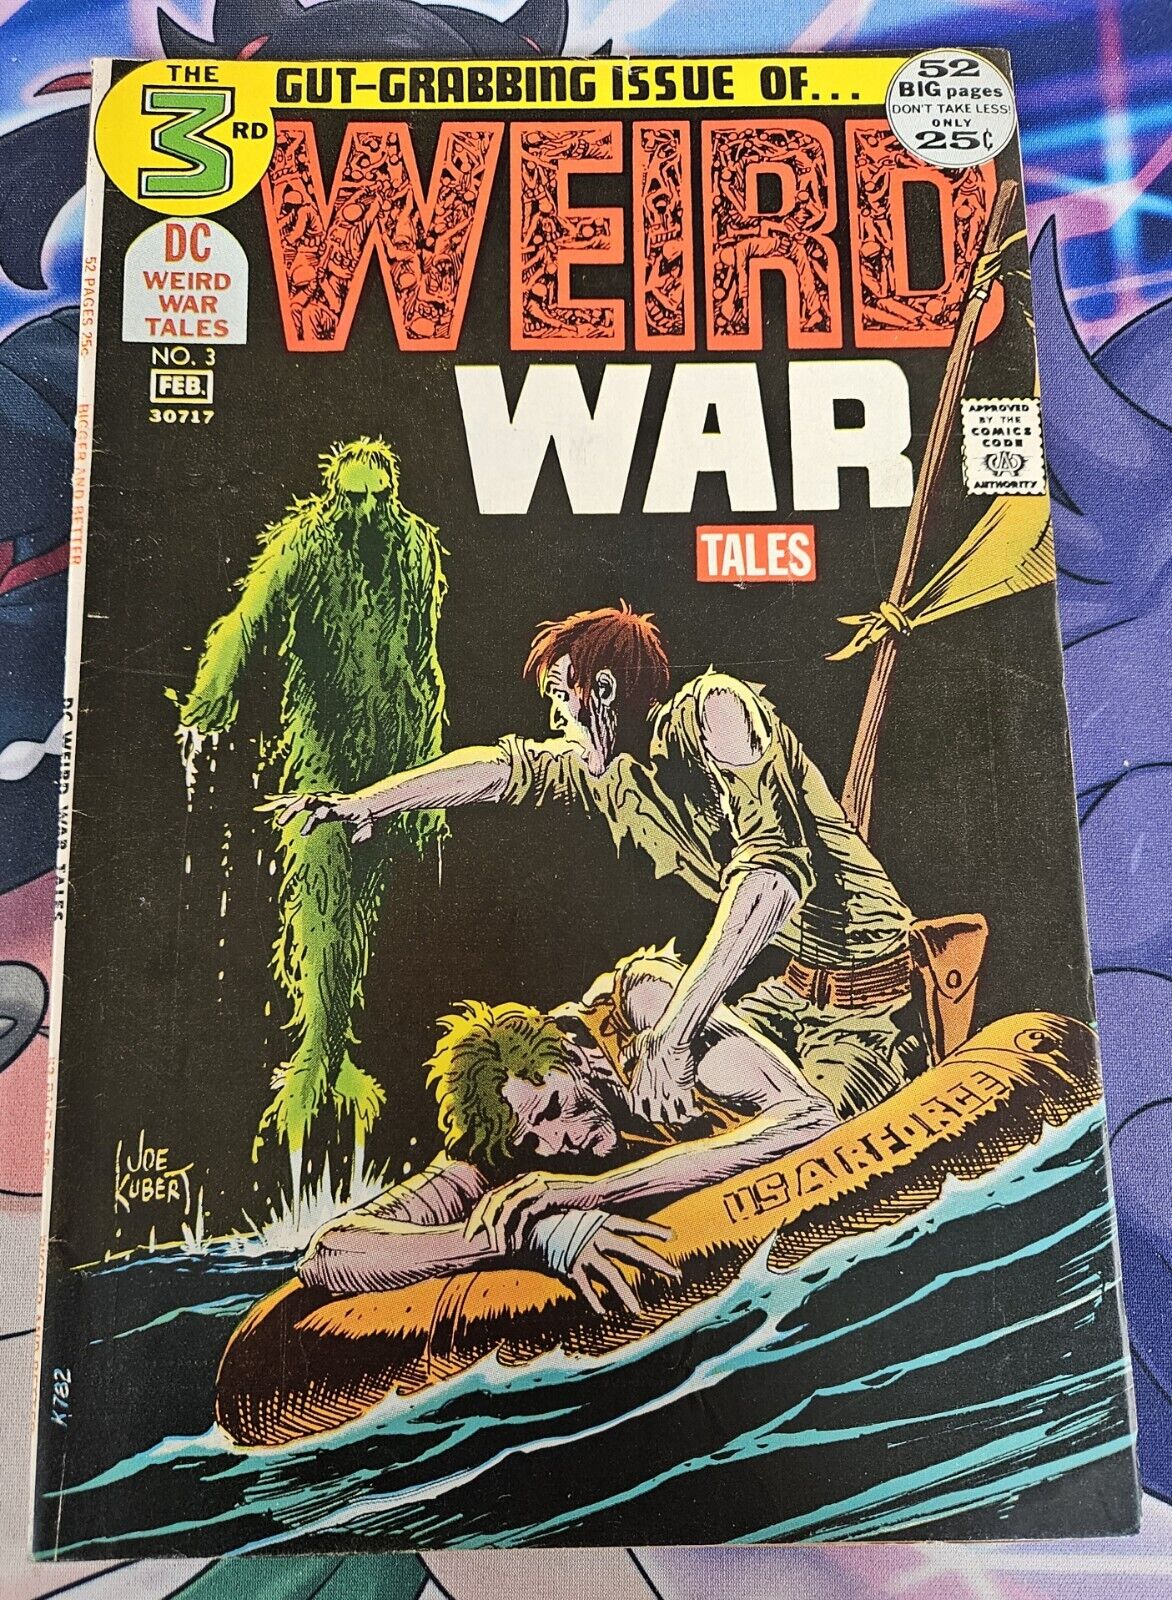 WEIRD WAR TALES #3, DC COMICS, 1972, JOE KUBERT